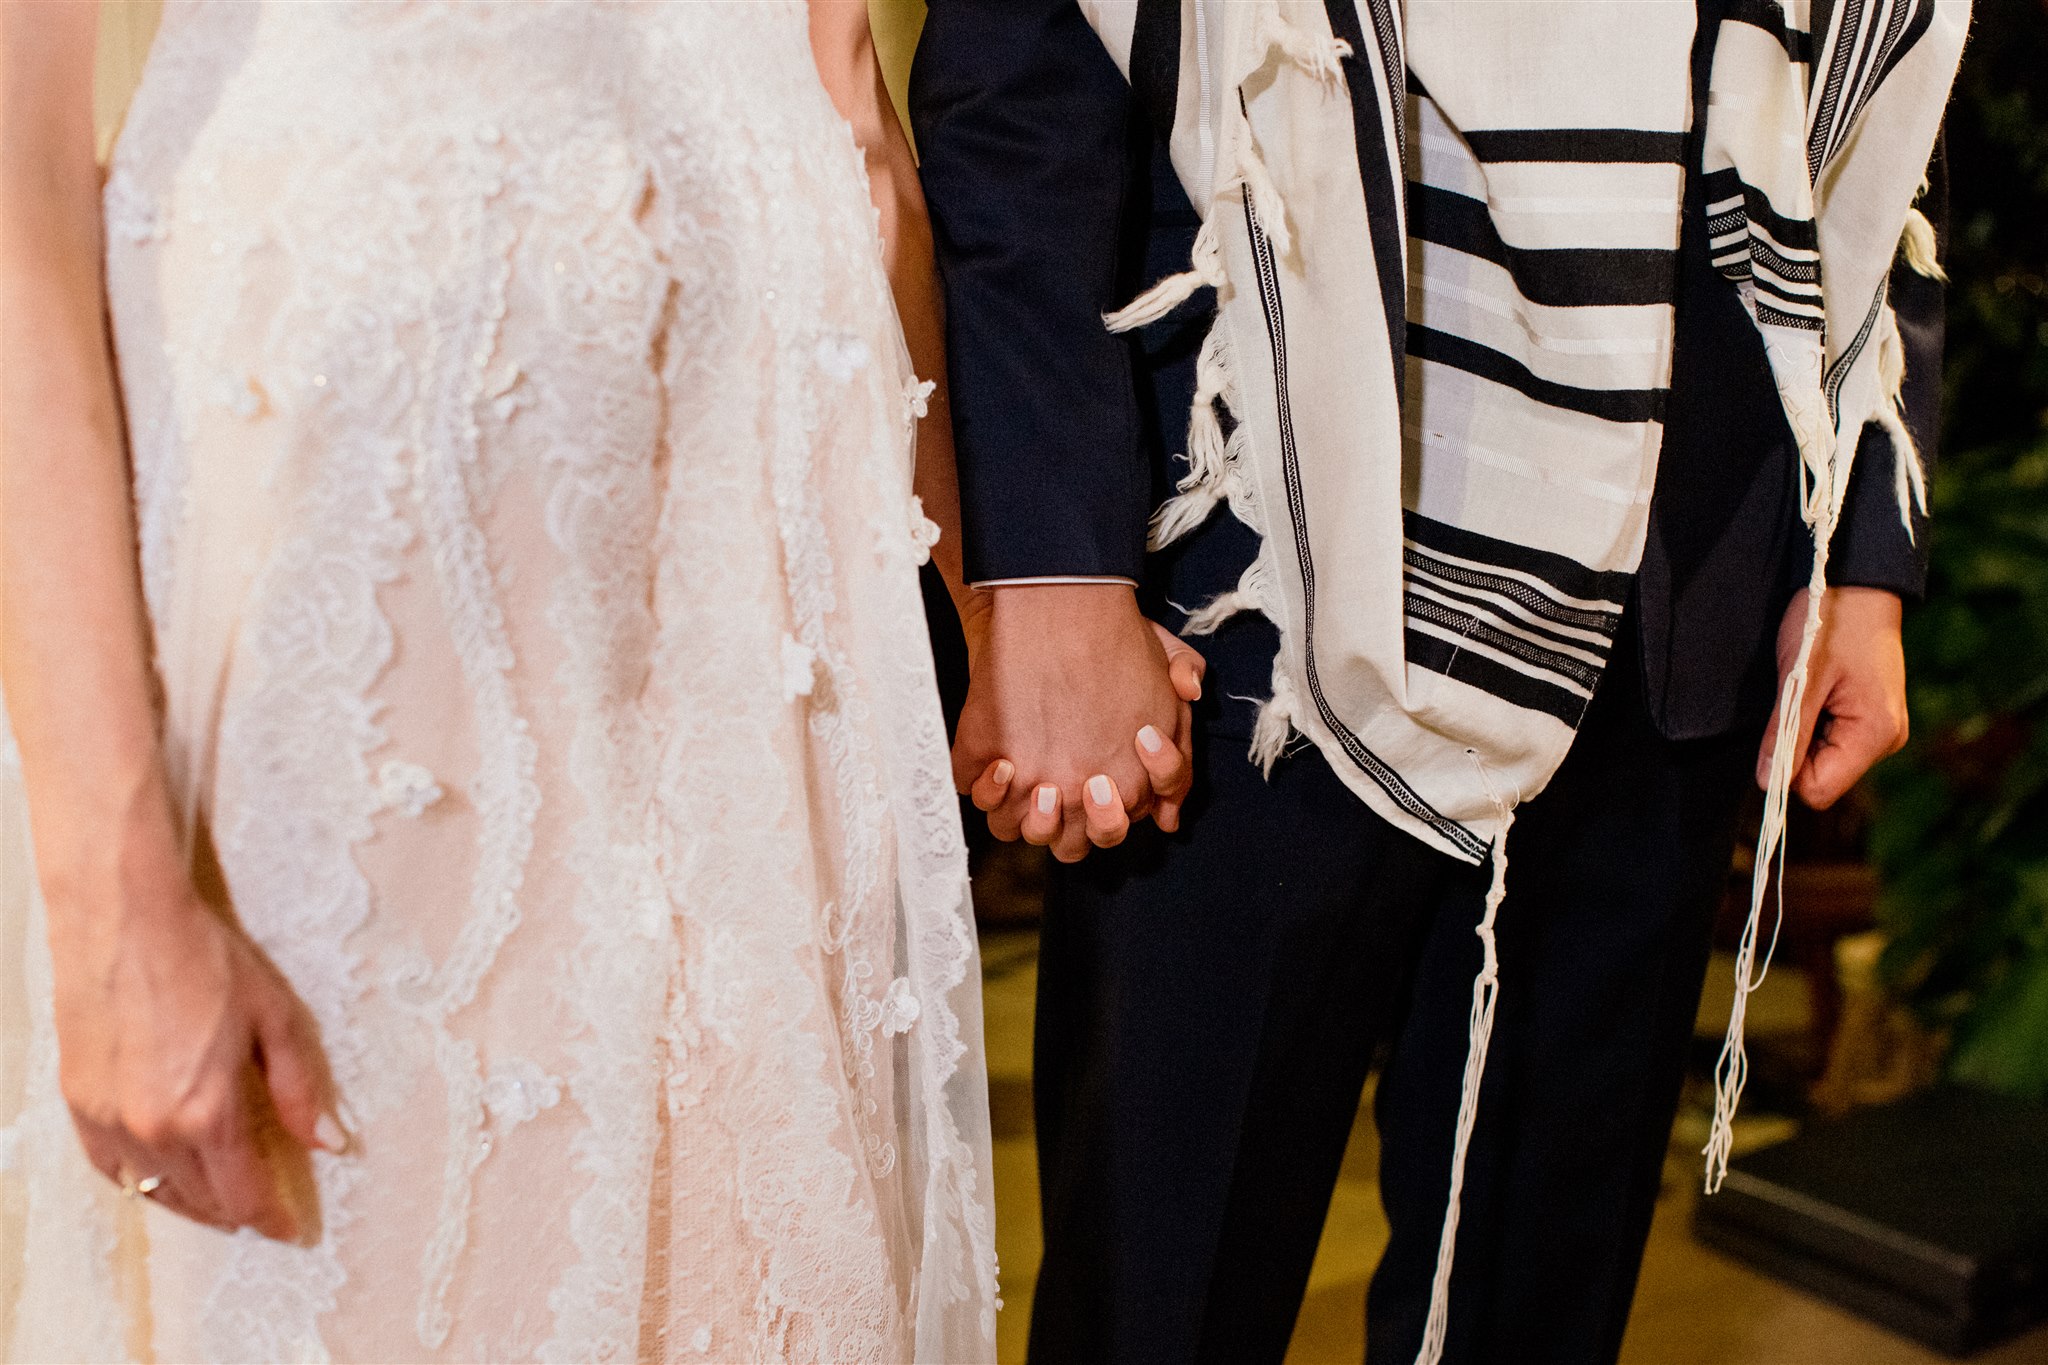 Casamento judaico em agradável noite de São Paulo &#8211; Sonia &#038; Daniel